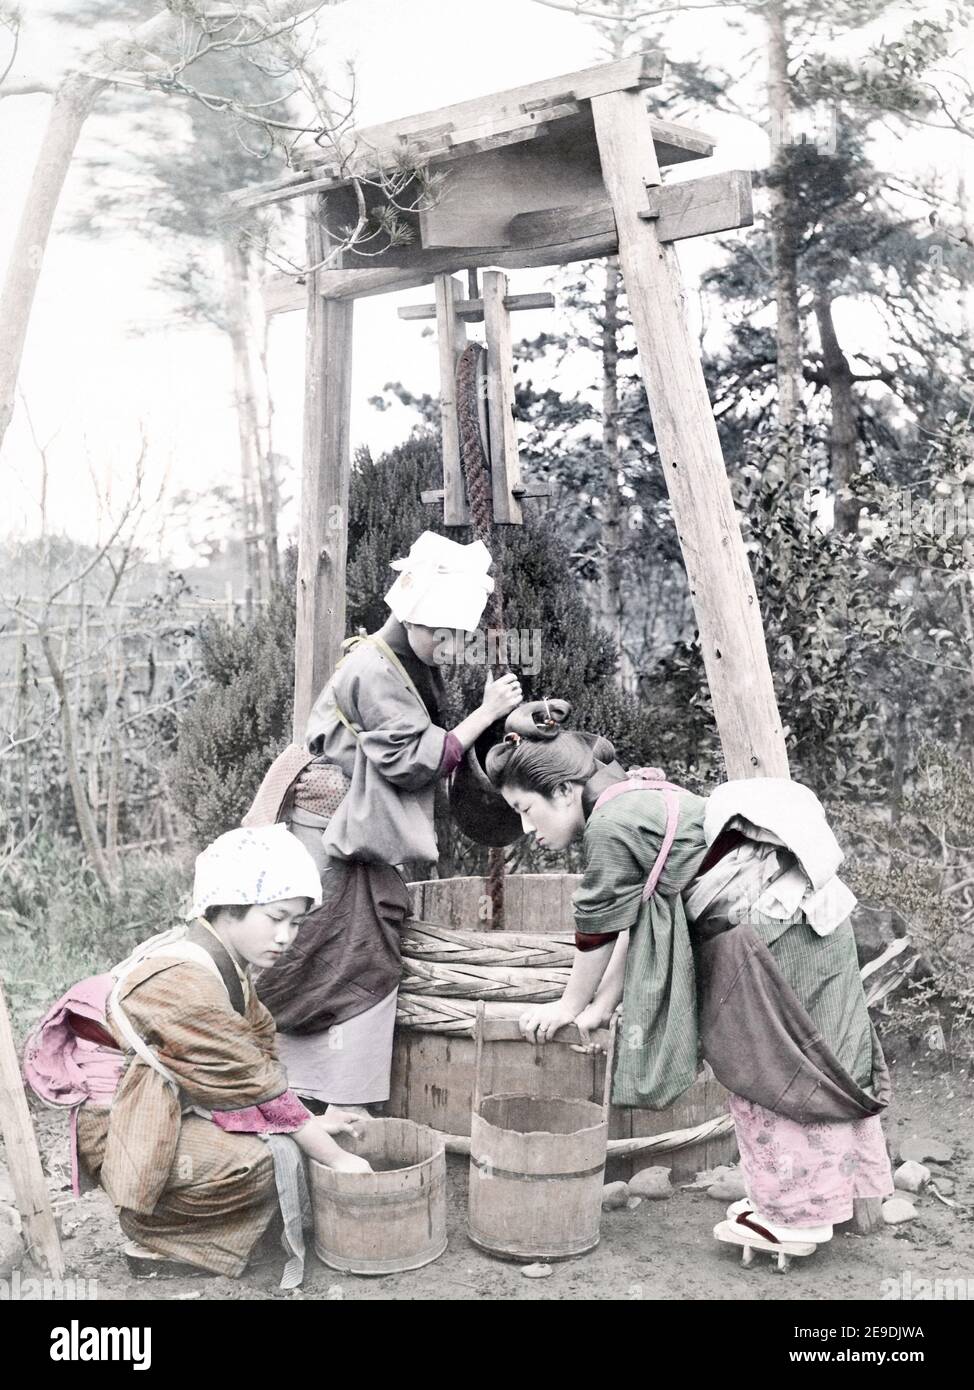 Fotografía de finales del siglo 19 - mujer joven sacando agua de un pozo, Japón, c.1880 Foto de stock